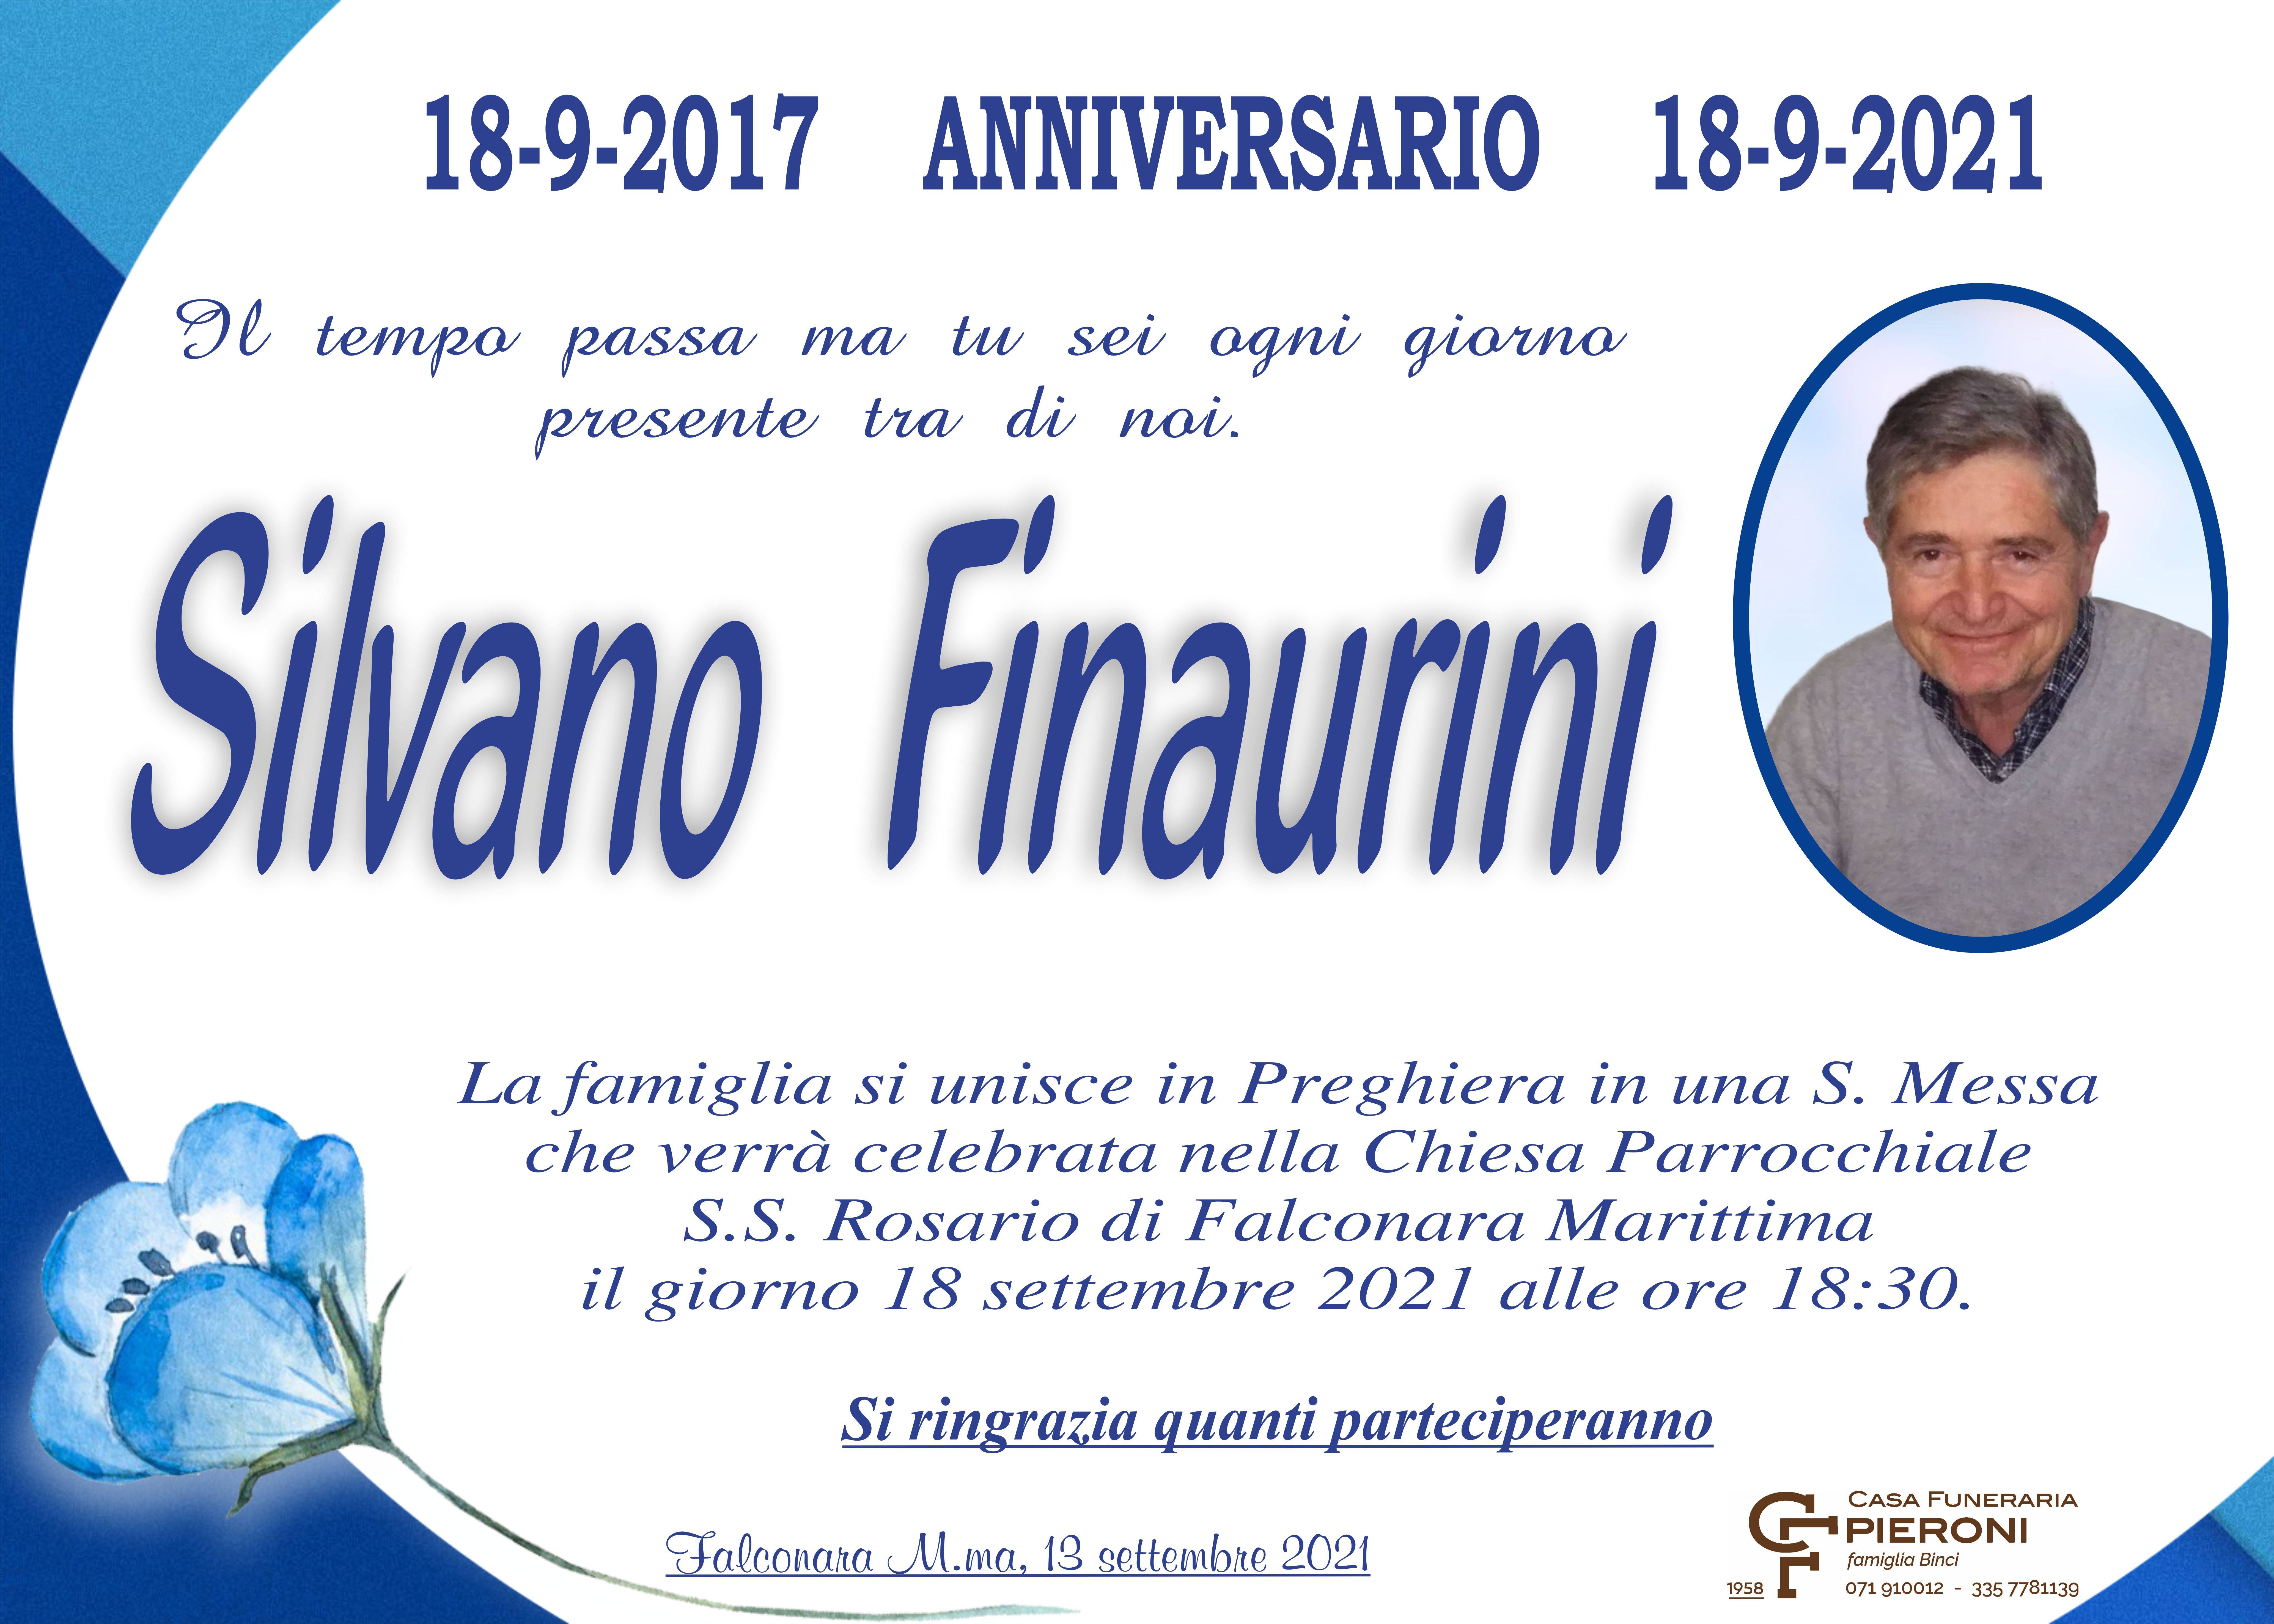 Silvano Finaurini